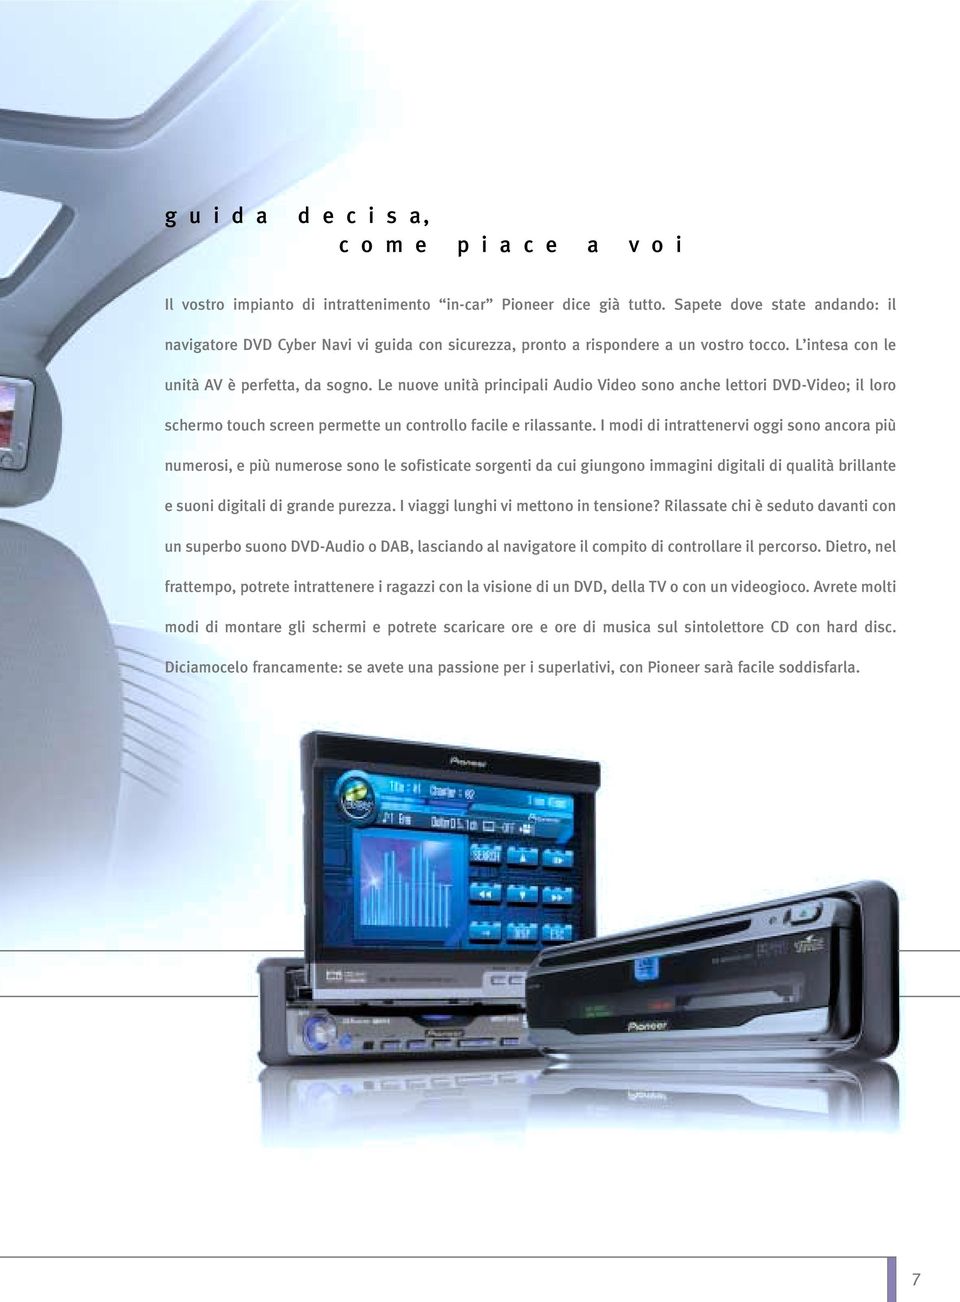 Le nuove unità principali Audio Video sono anche lettori DVD-Video; il loro schermo touch screen permette un controllo facile e rilassante.